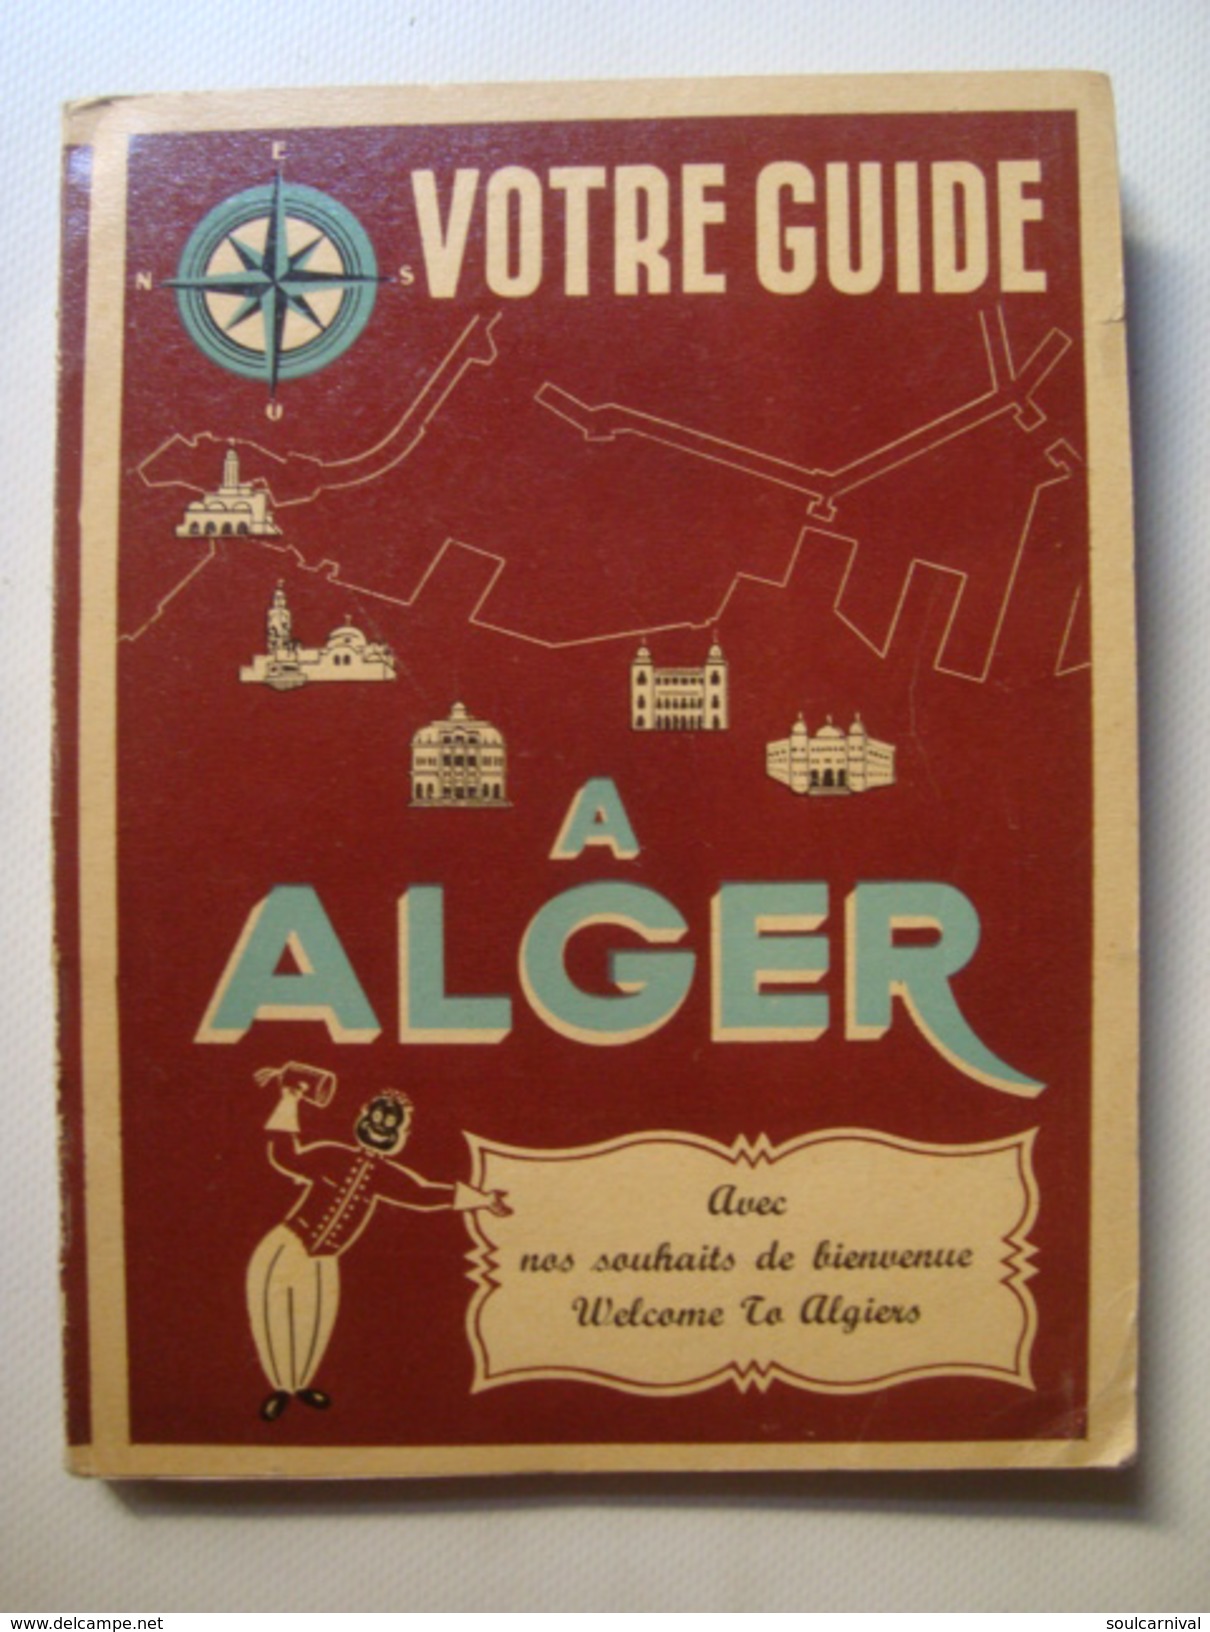 VOTRE GUIDE À ALGER, AVEC NOS SOUHAITS DE BIENVENUE / WELCOME TO ALGIERS - ALGERIA, PUBLIMONDE 1950 APROX. VIN ALGÉRIANA - Afrika